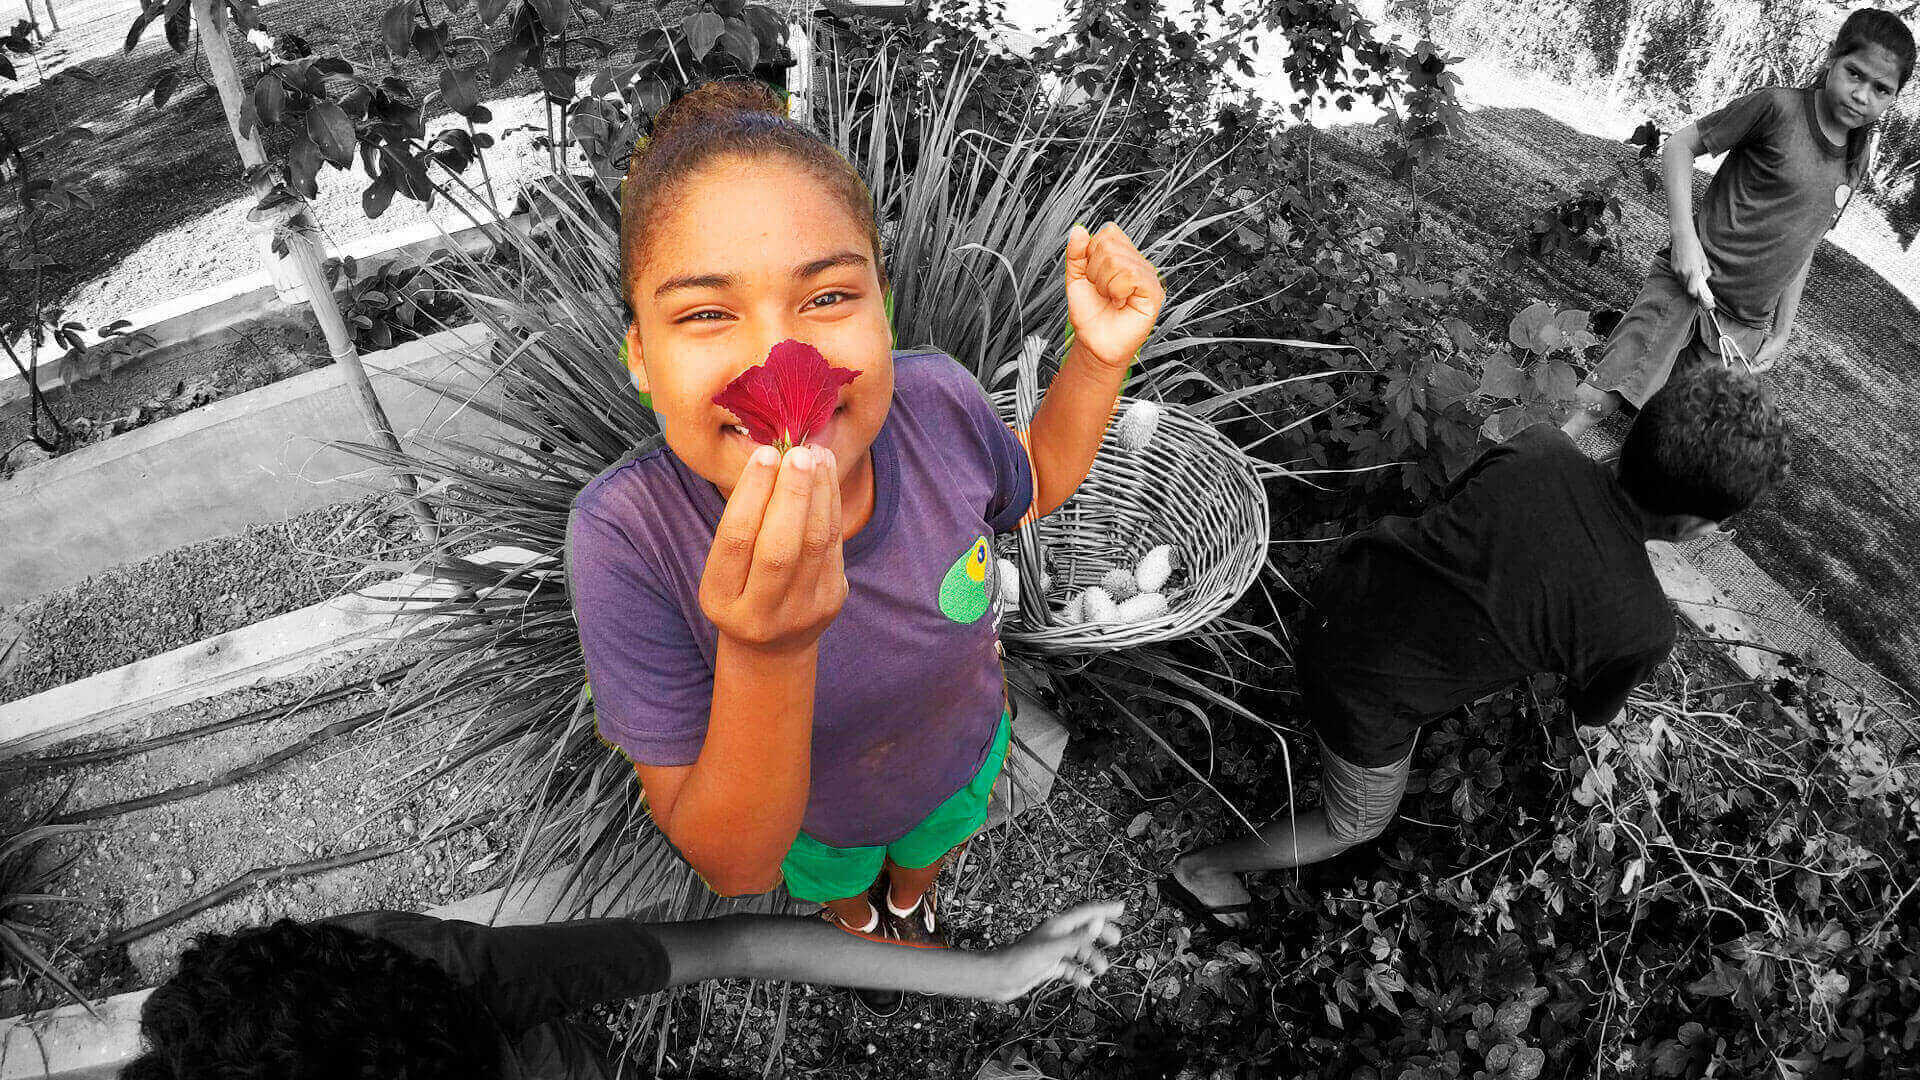 Menina negra olha para a foto segurando uma flor na frente do rosto. Ela segura uma cesta de vime no braço